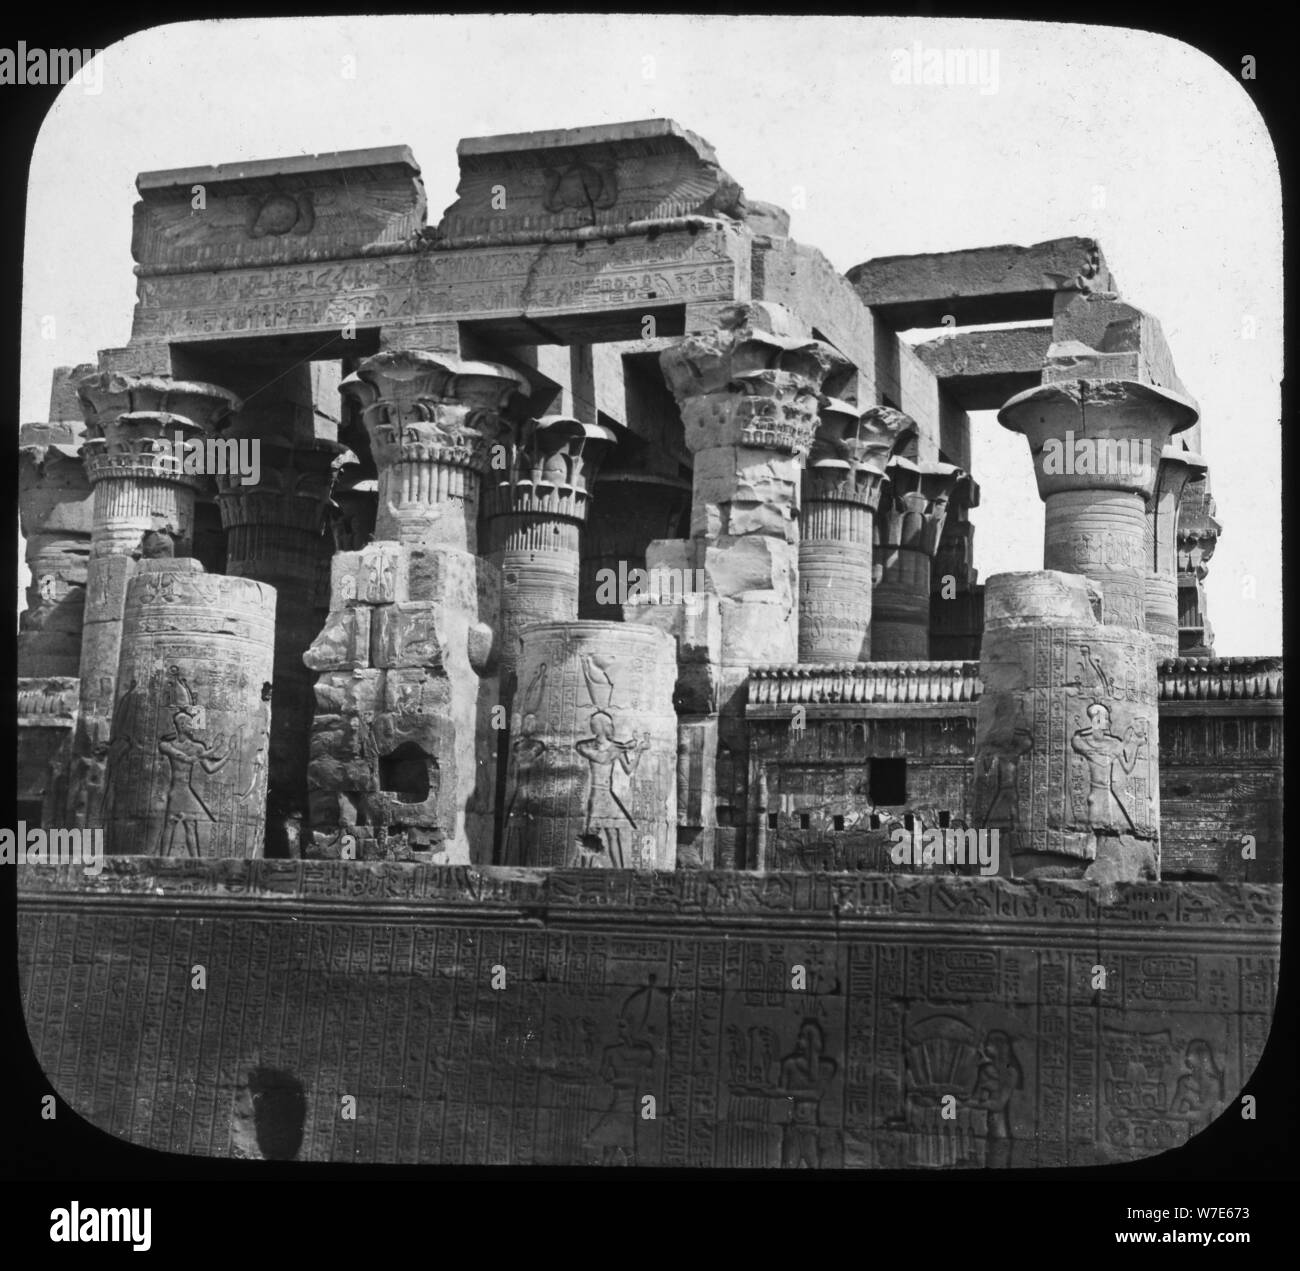 Tempio di Kom Ombo, Egitto, c1890. Artista: Newton & Co Foto Stock